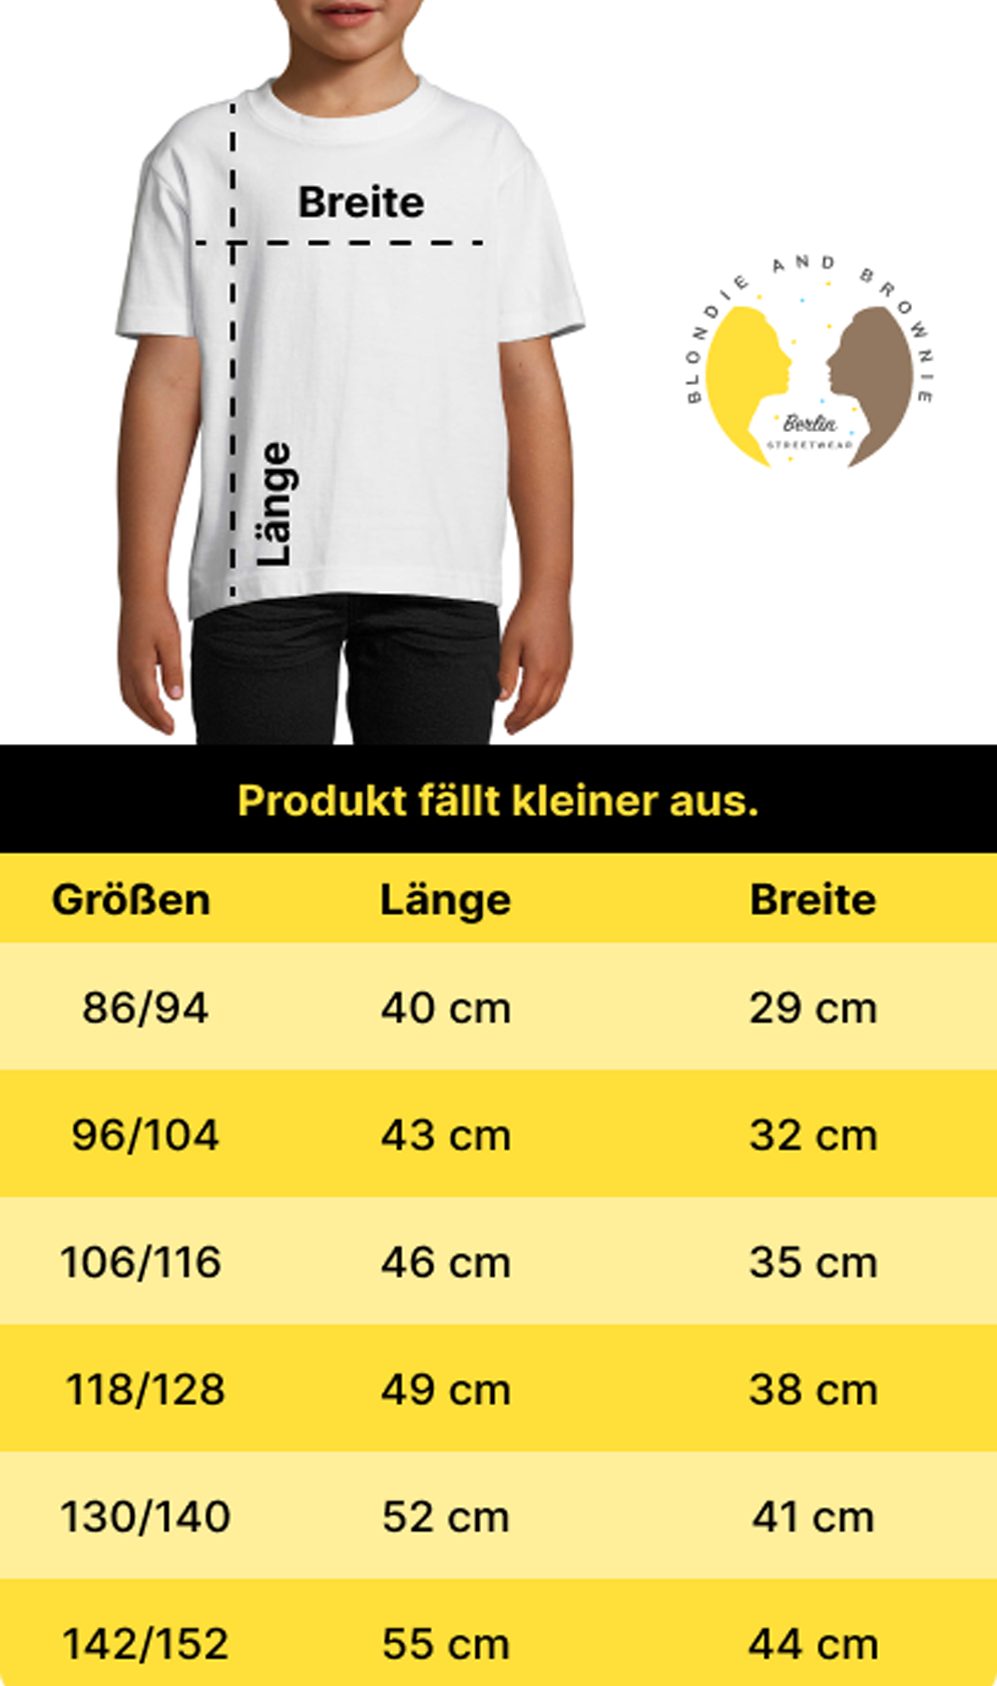 Sport Trikot EM Meister & Blondie T-Shirt Deutschland Kinder Fußball Germany Gold/Schwarz Brownie